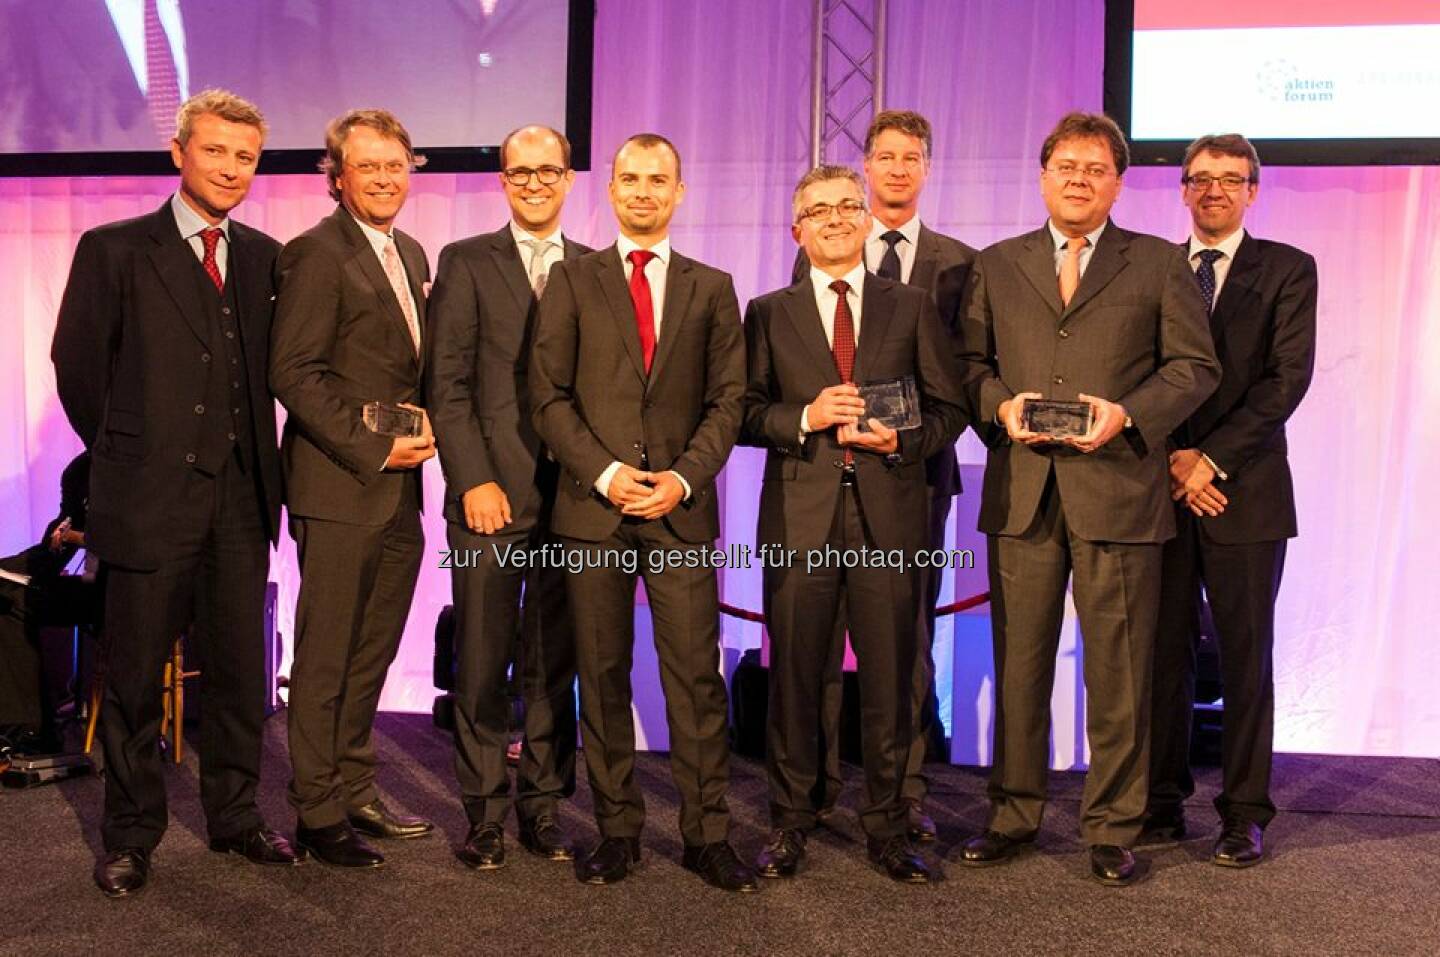 voestalpine doppelter Sieger beim Wiener Börse Preis: Neben dem #ATX-Preis, erhielt der voestalpine-Konzern auch den erstmalig verliehenen #Journalistenpreis. http://bit.ly/1k7v6B8  Source: http://facebook.com/voestalpine